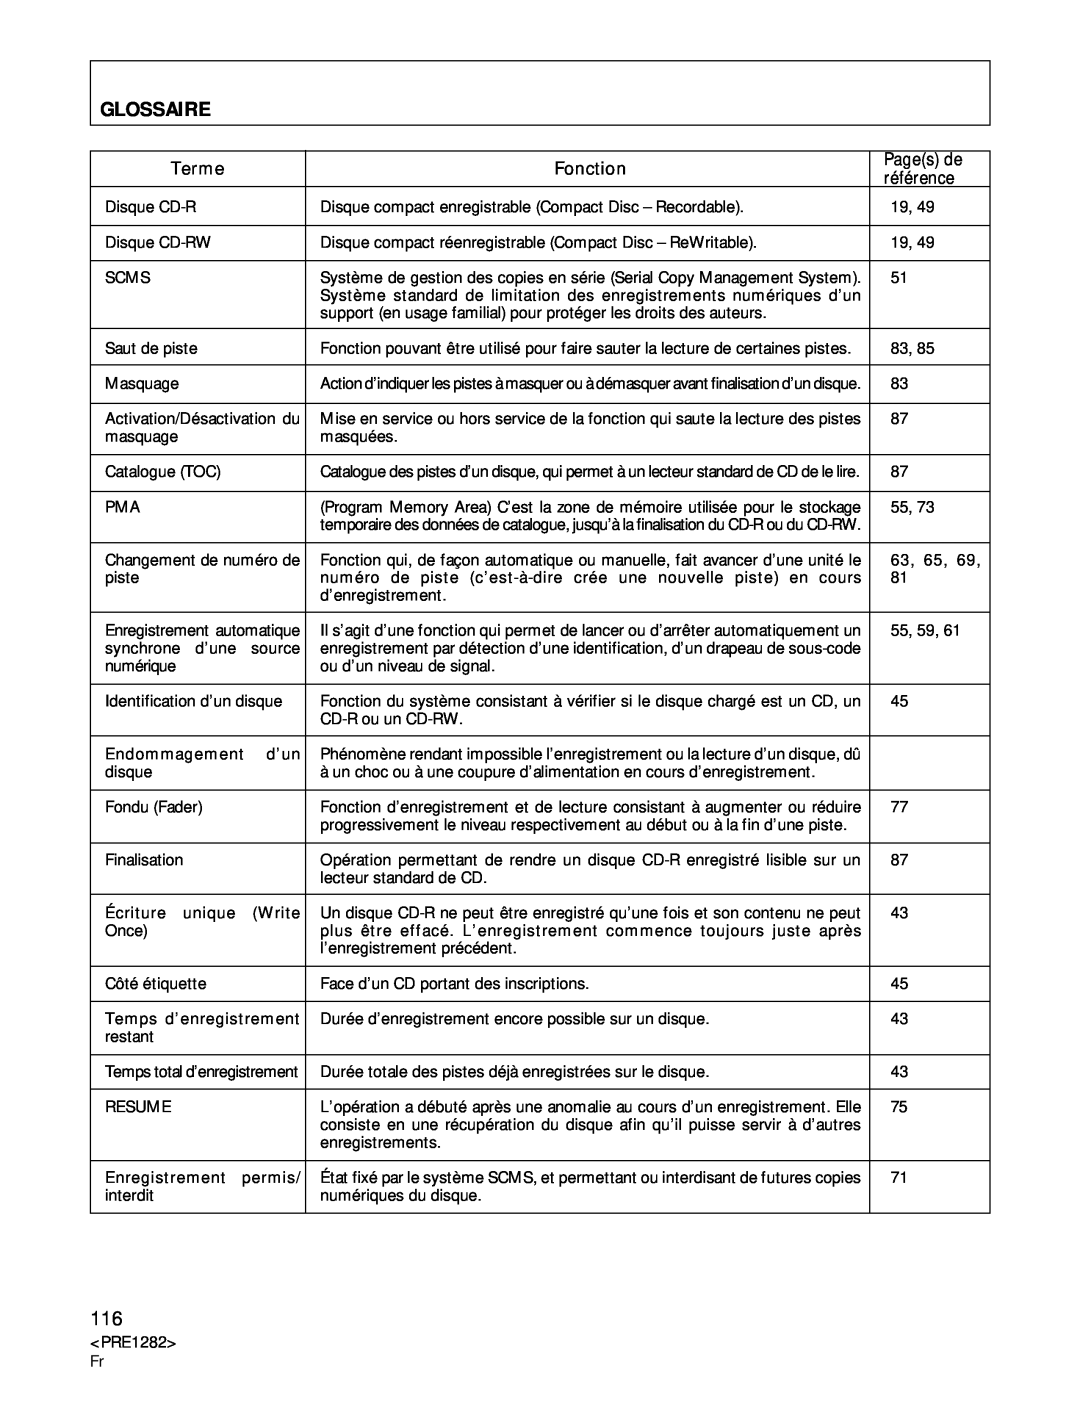 Americana Appliances CDR-850 manual Glossaire, Terme, Fonction, Pages de, référence 